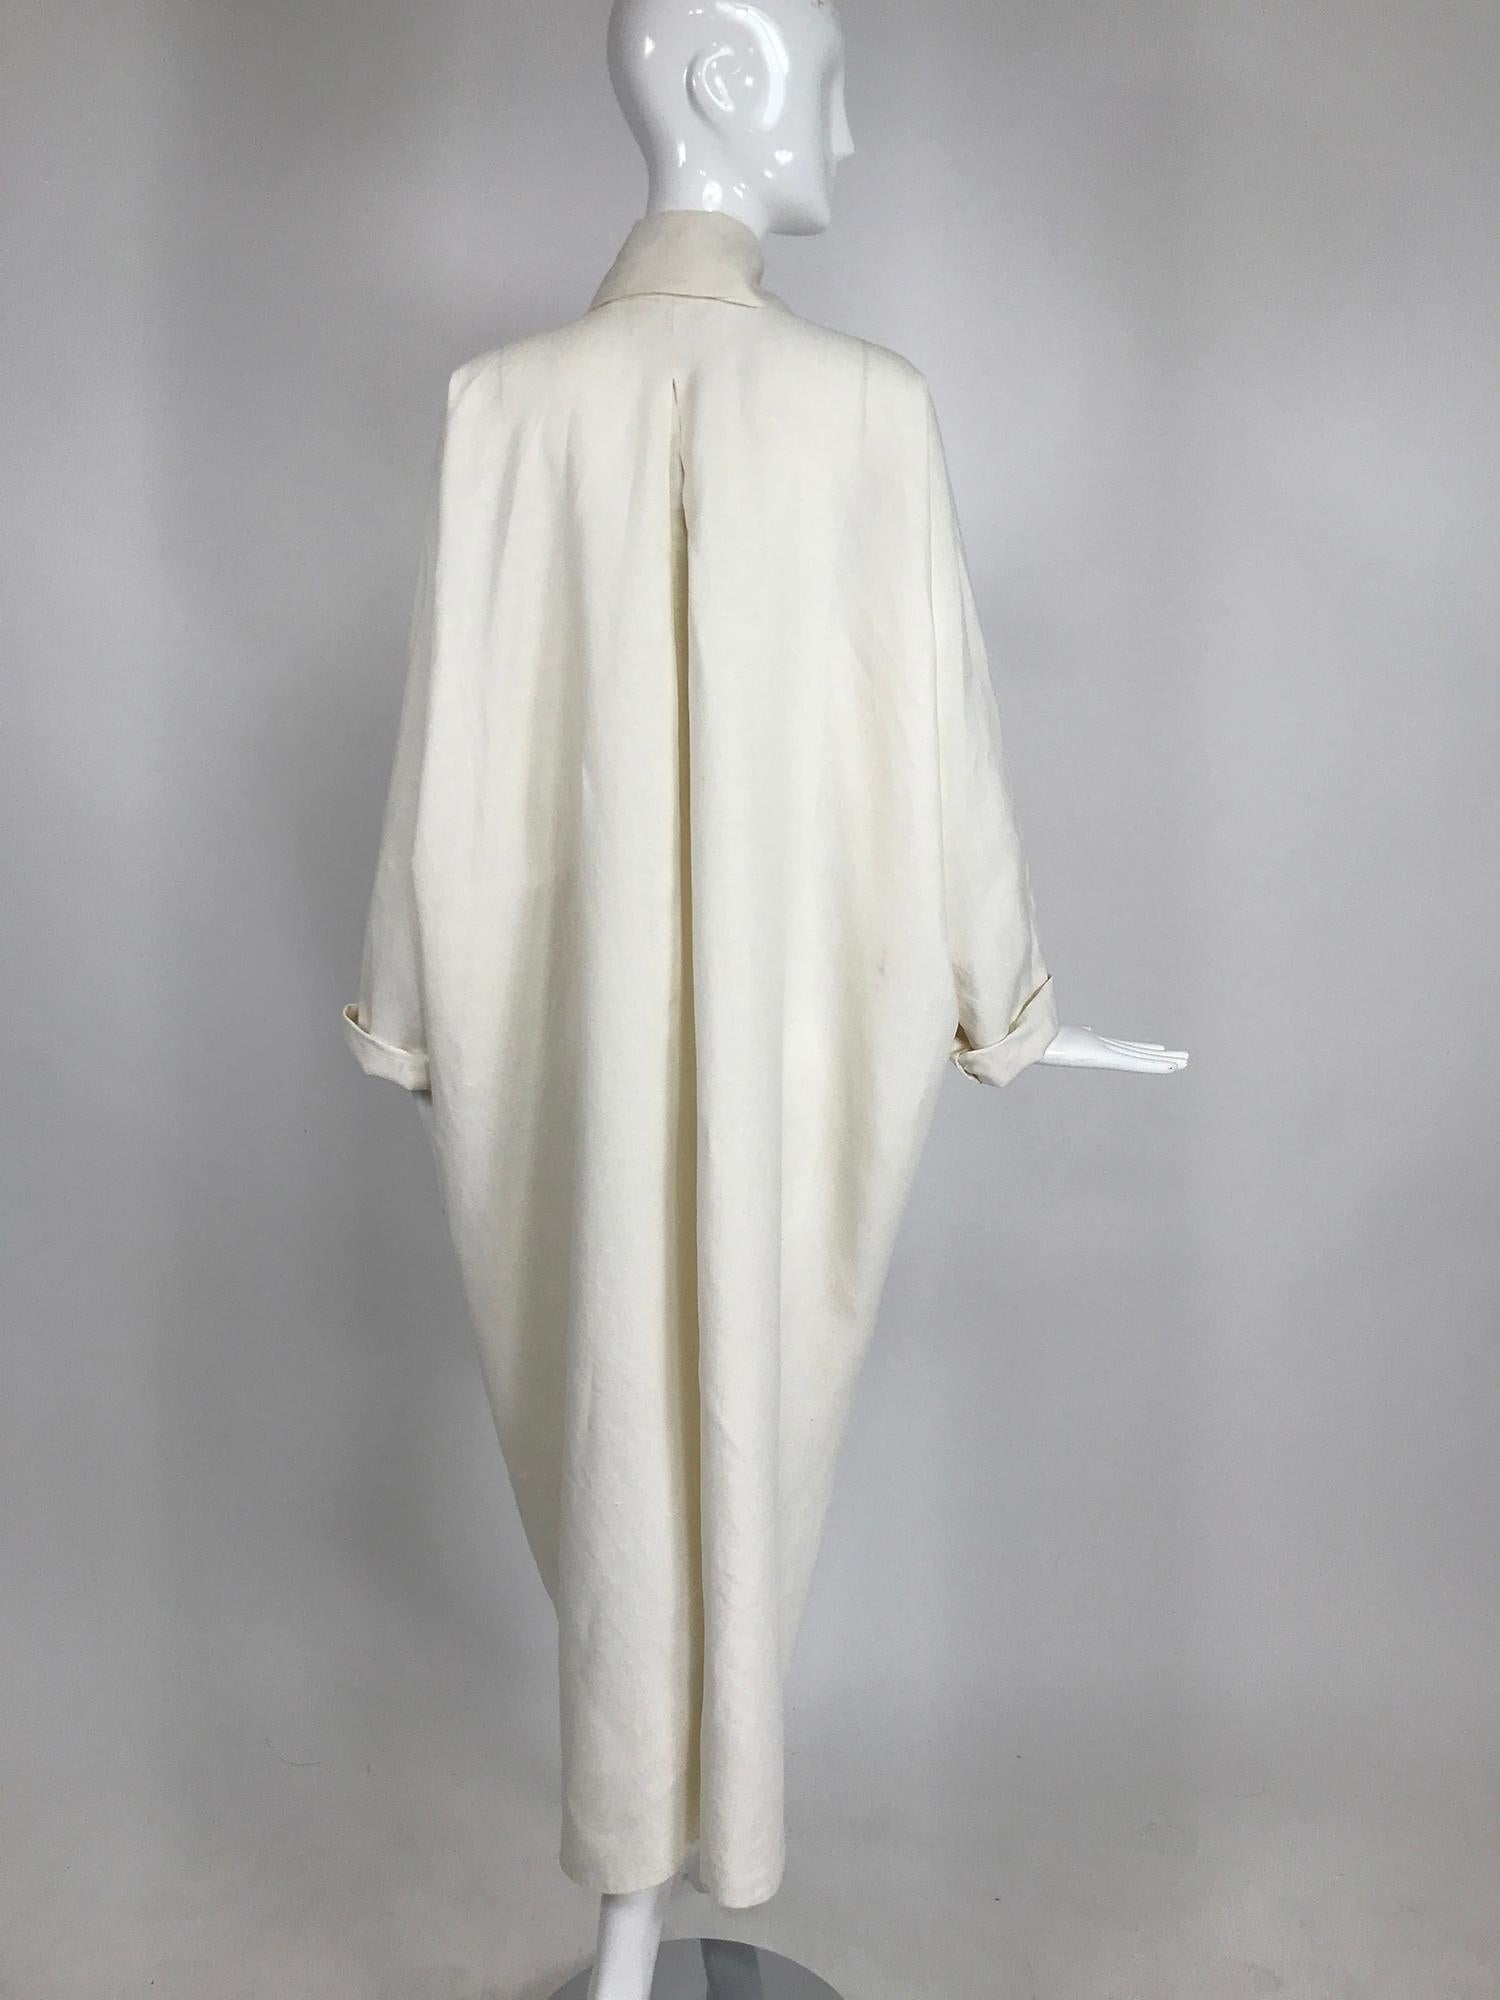 Women's or Men's Vintage White Linen Duster Coat Over Size 1990s